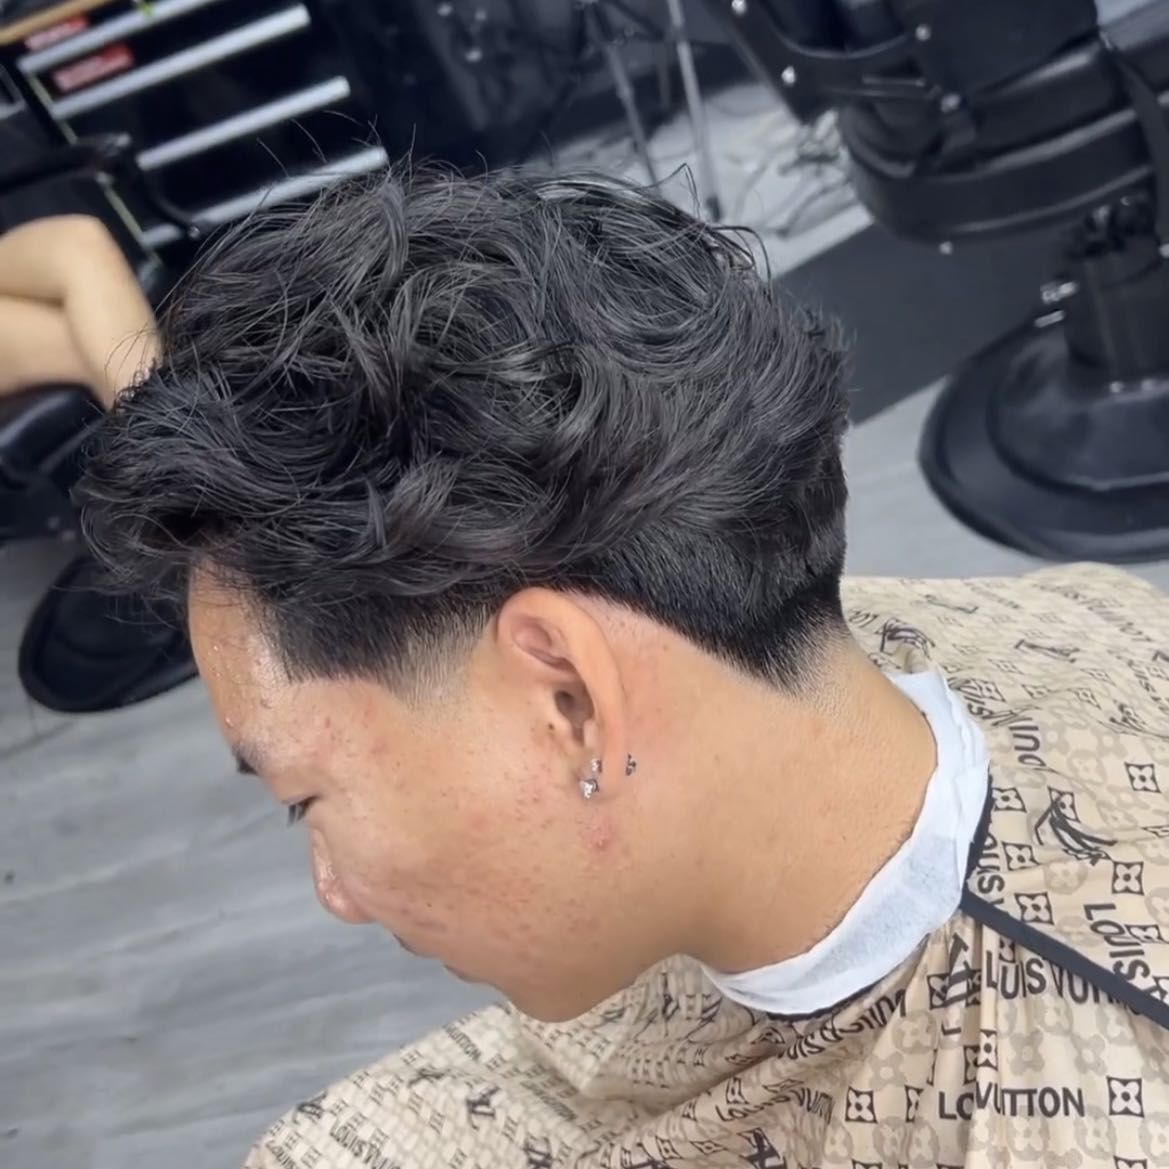 Haircut w/ Tang portfolio